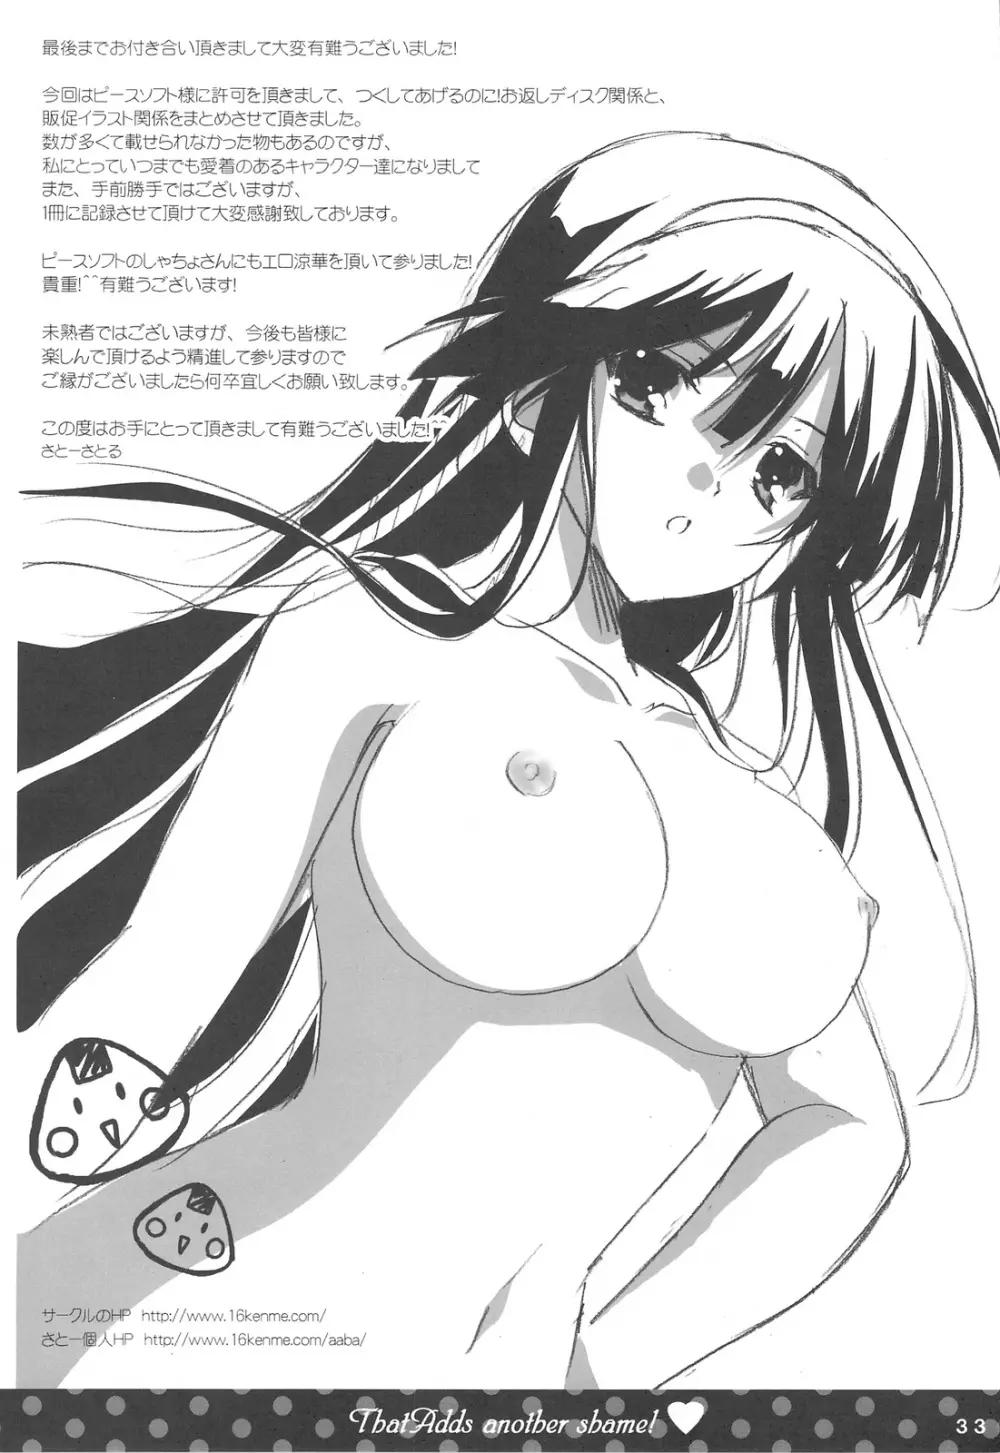 Shigeru 2! arufua 32ページ